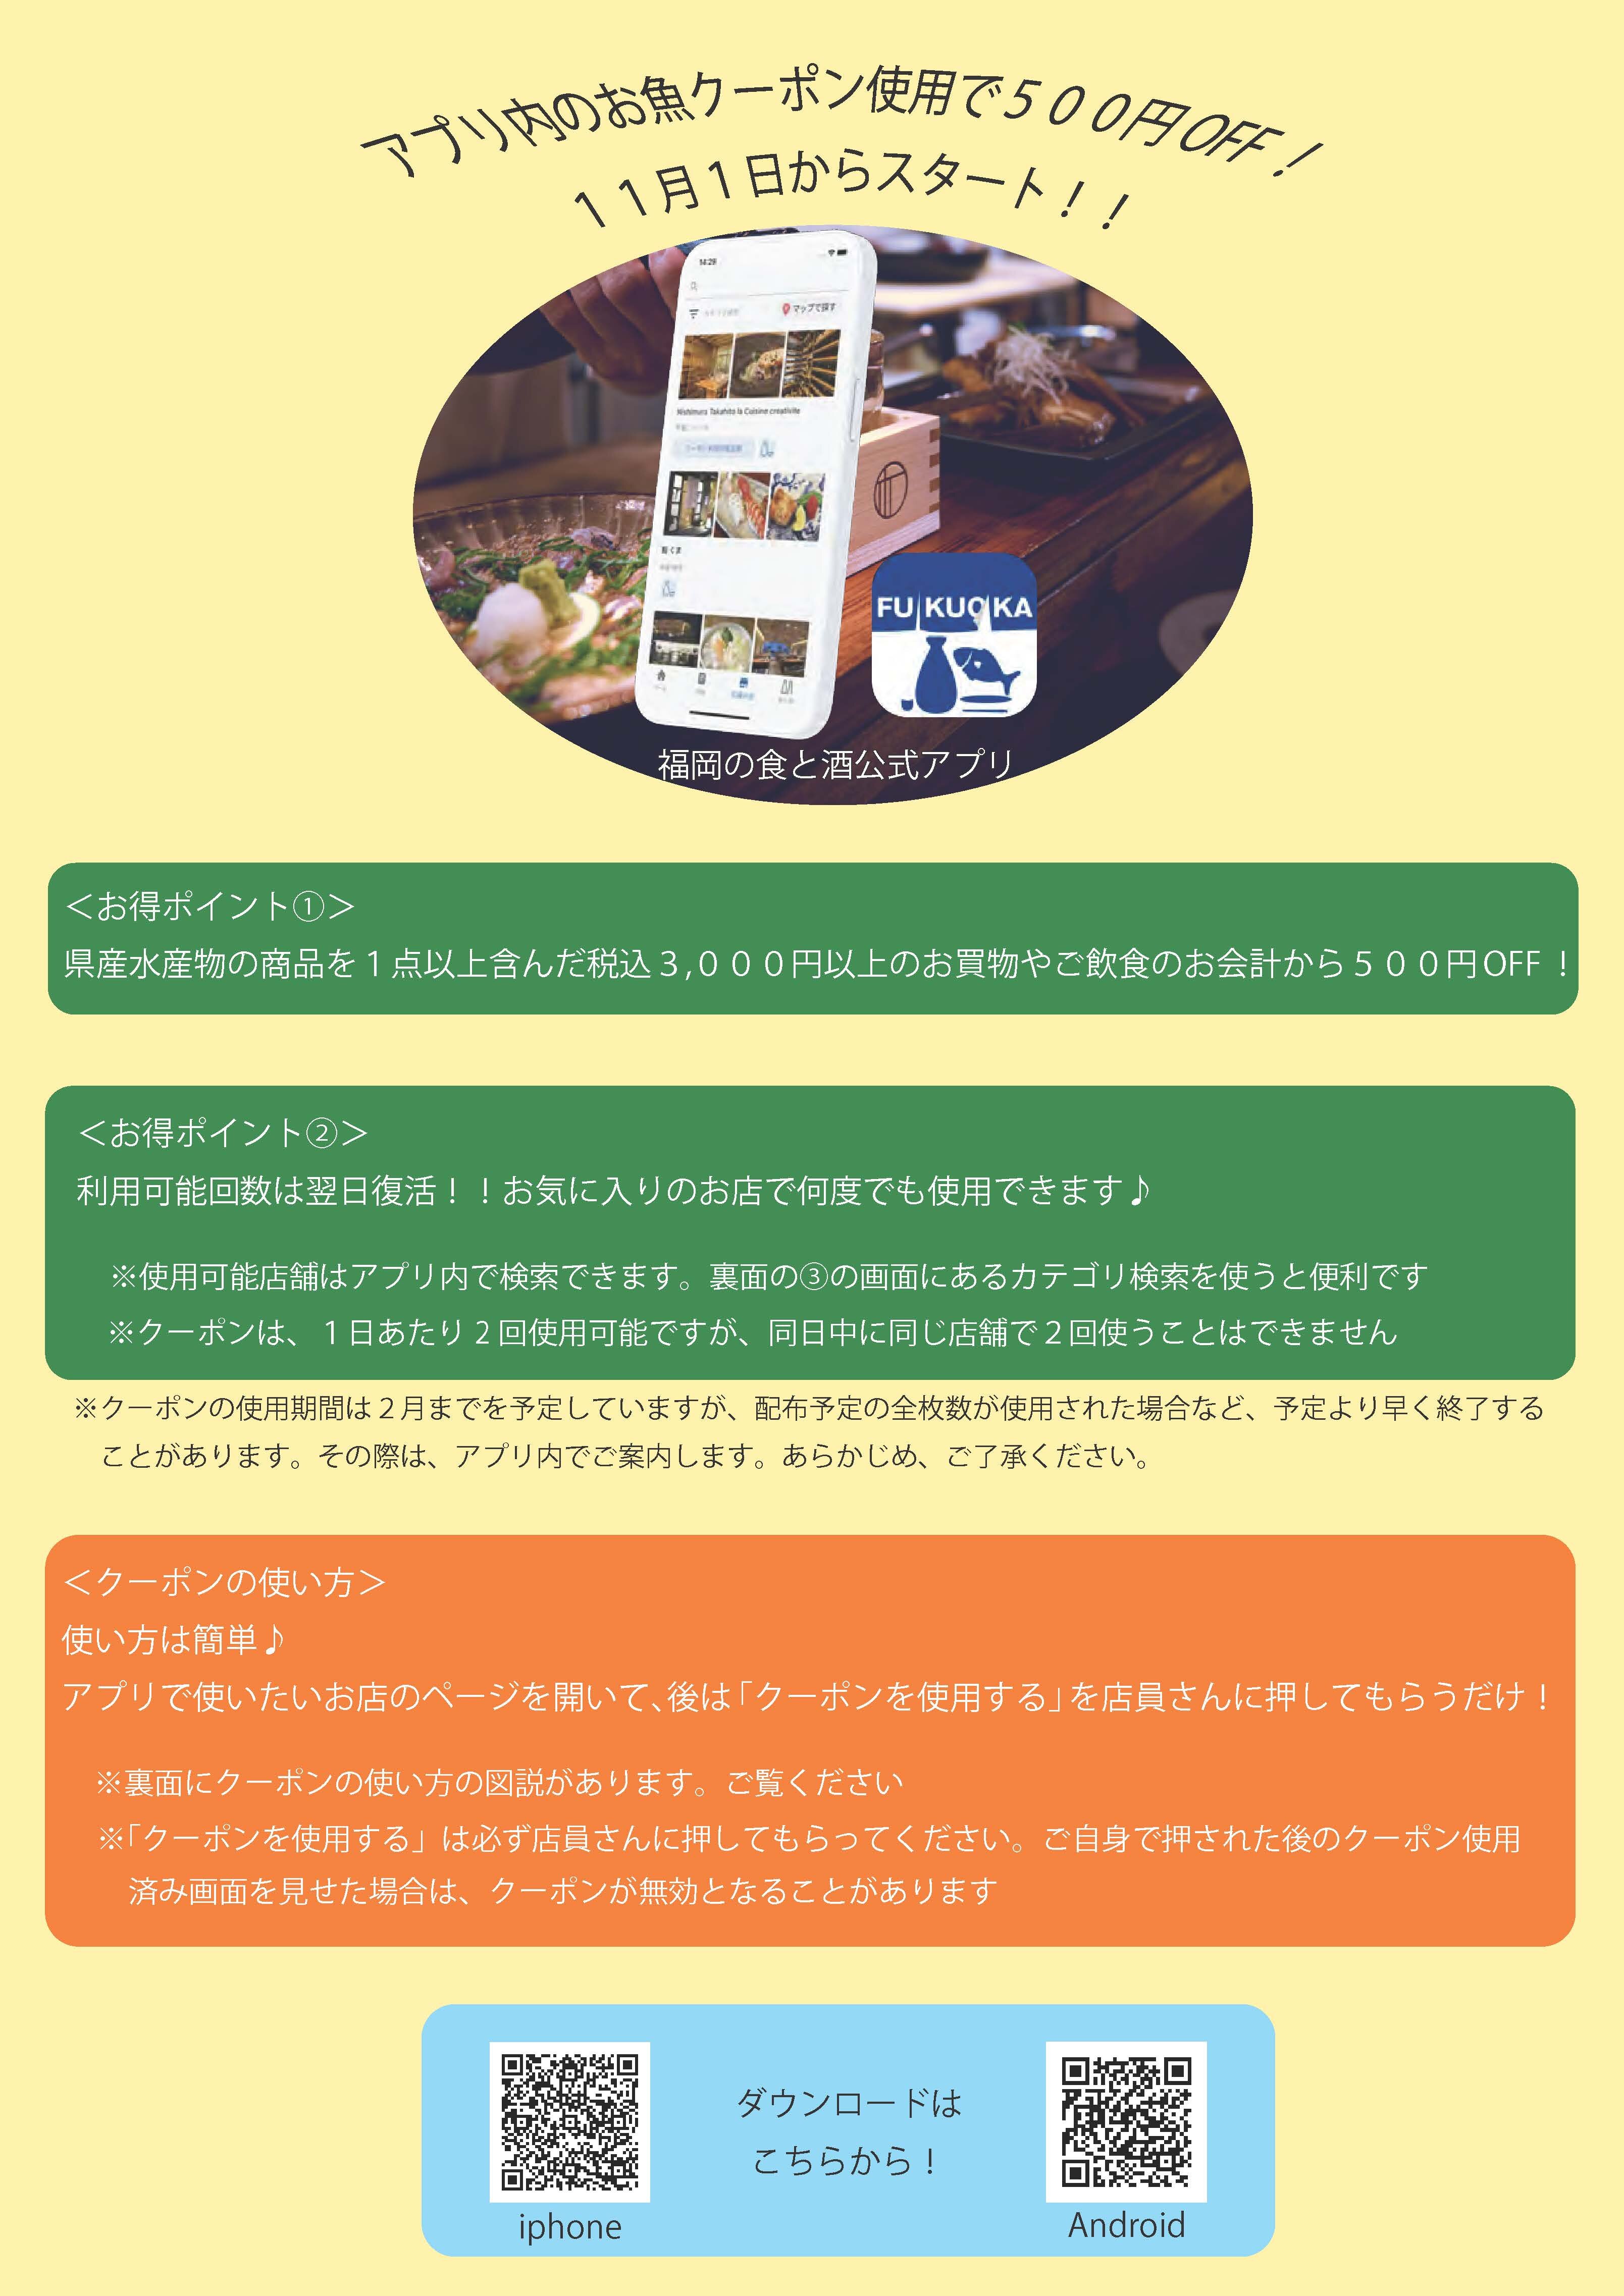 https://jizakanavi-fukuoka.jp/events/images/afc8c2dfc0c2f56b857e384a909c670c7bd3c603.jpg